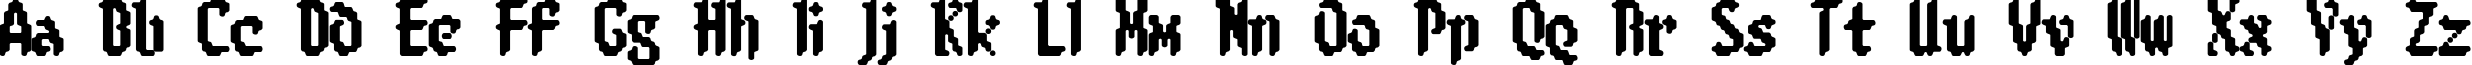 Пример написания английского алфавита шрифтом 8-bit Limit R (BRK)